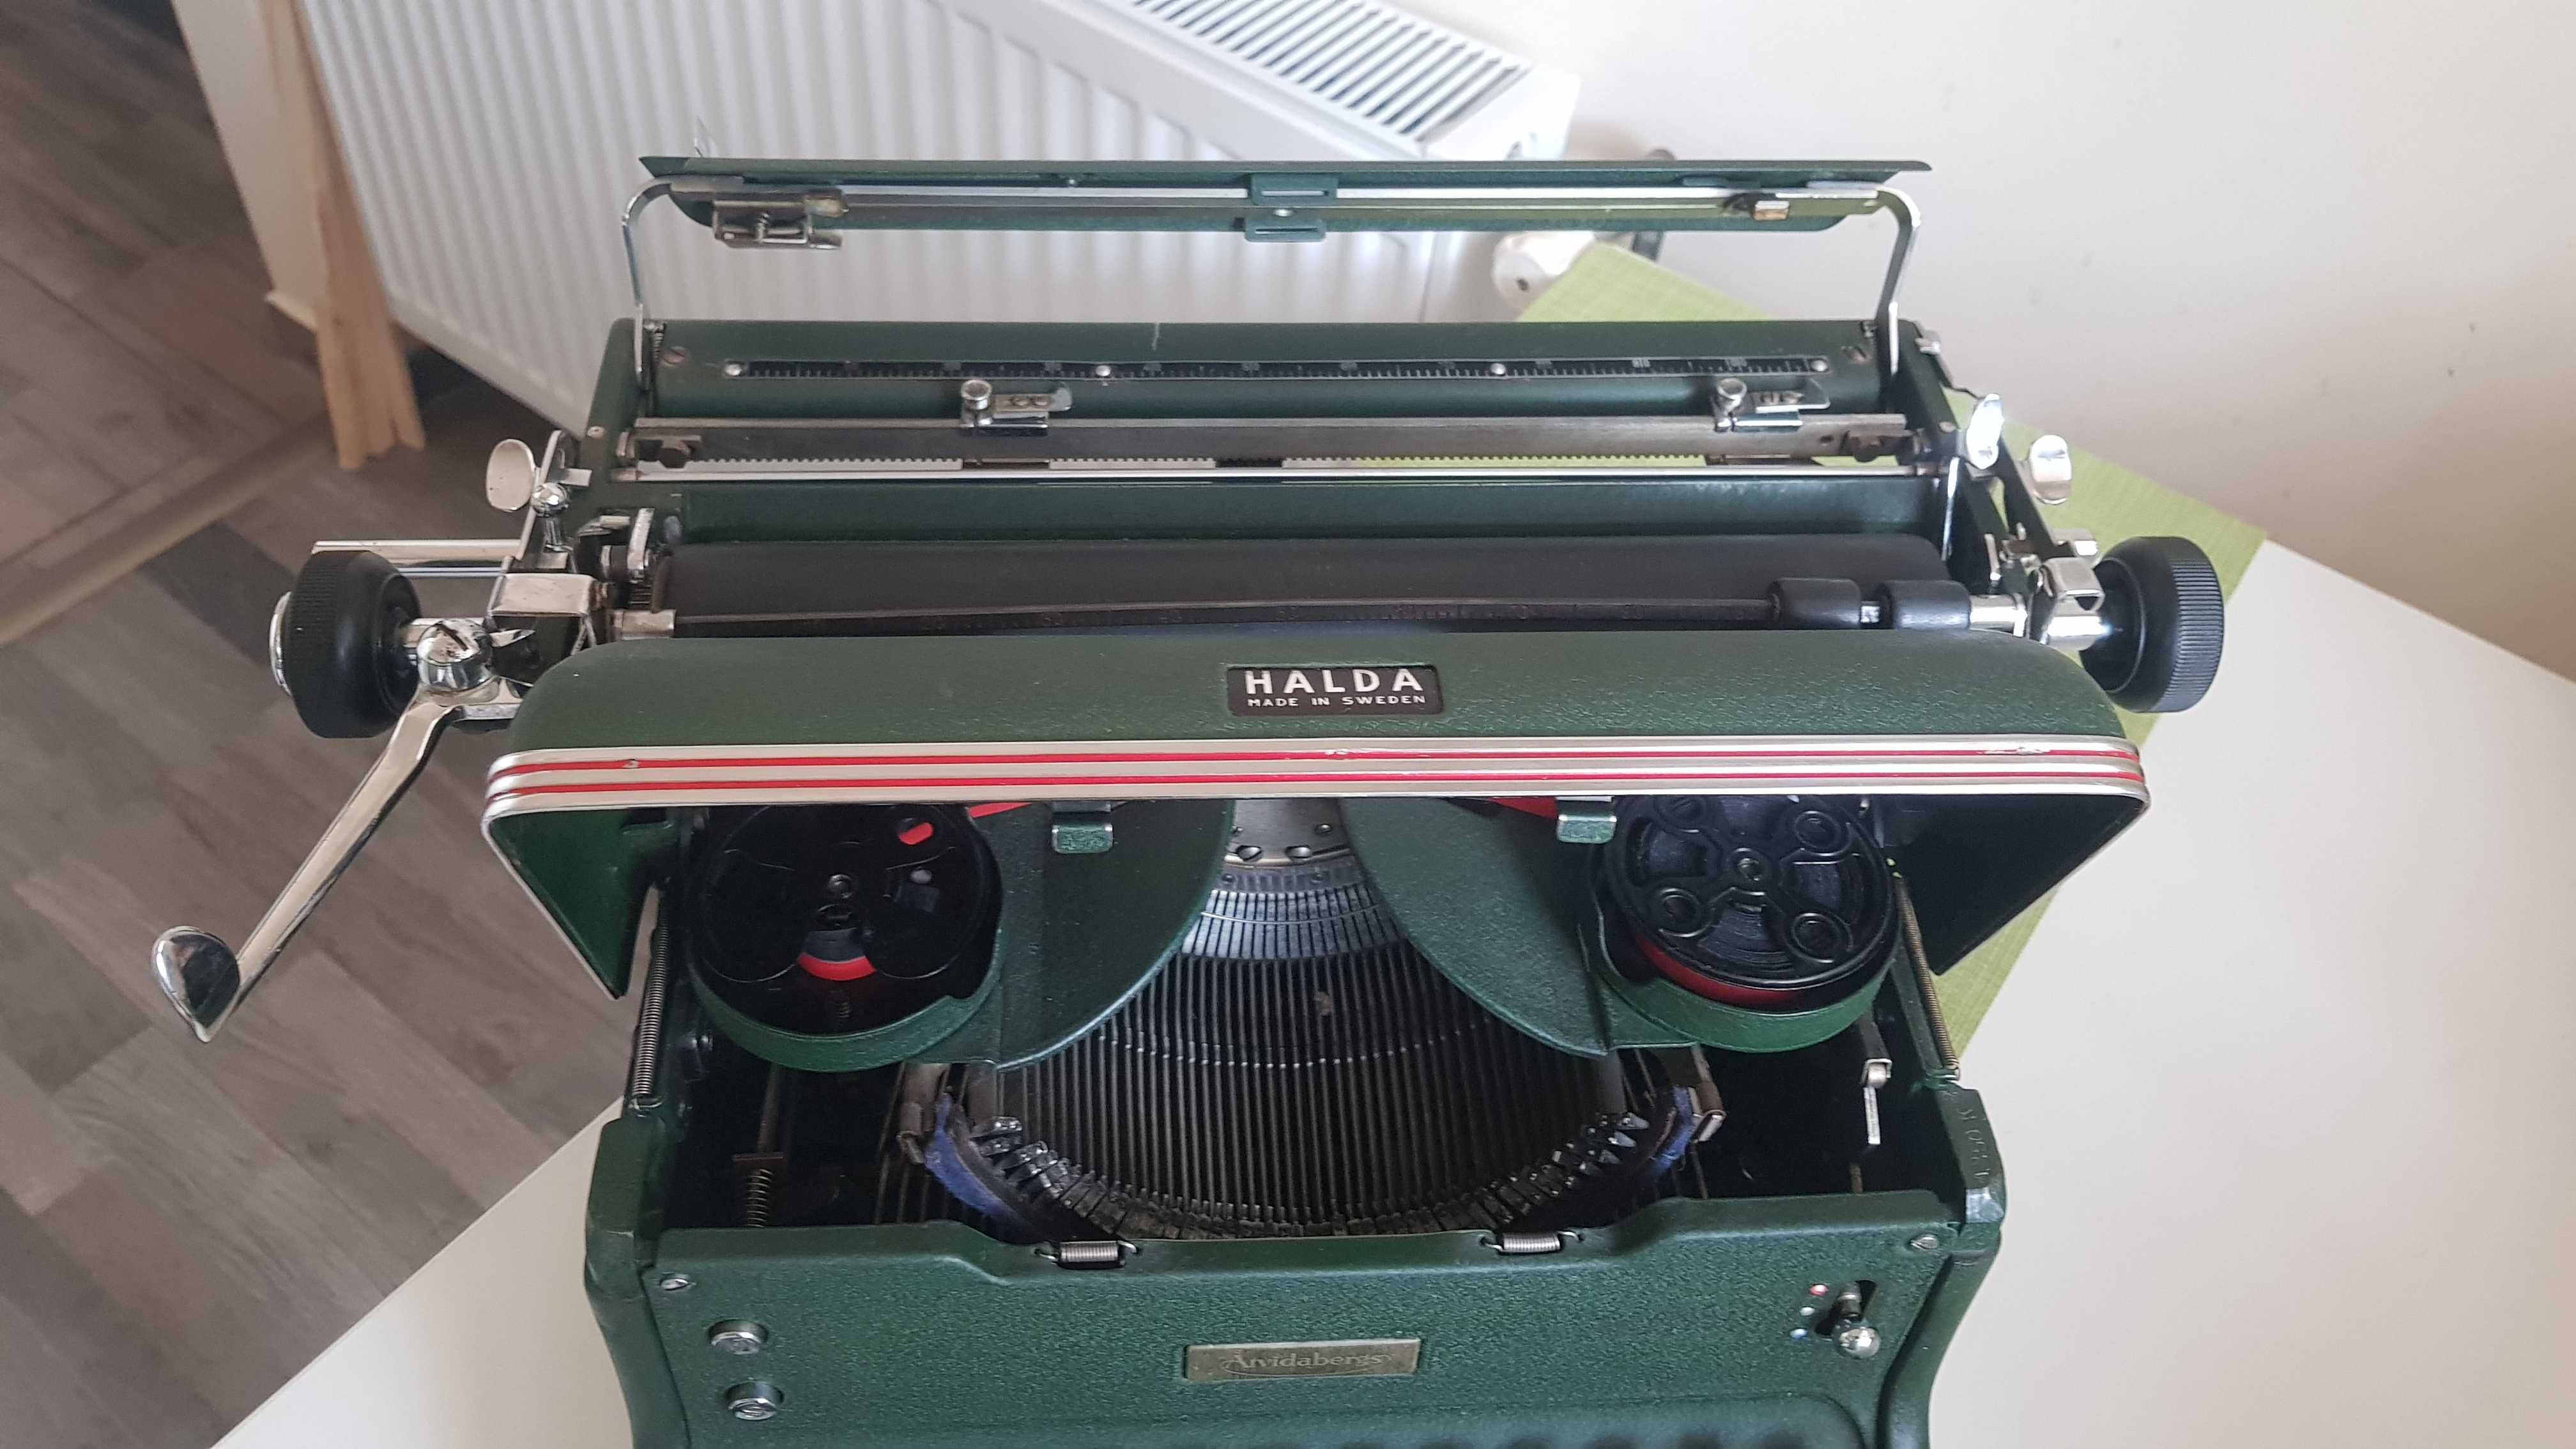 Masina de scris de colectie HALDA "Made in Sweden" anul 1950, 15 kg